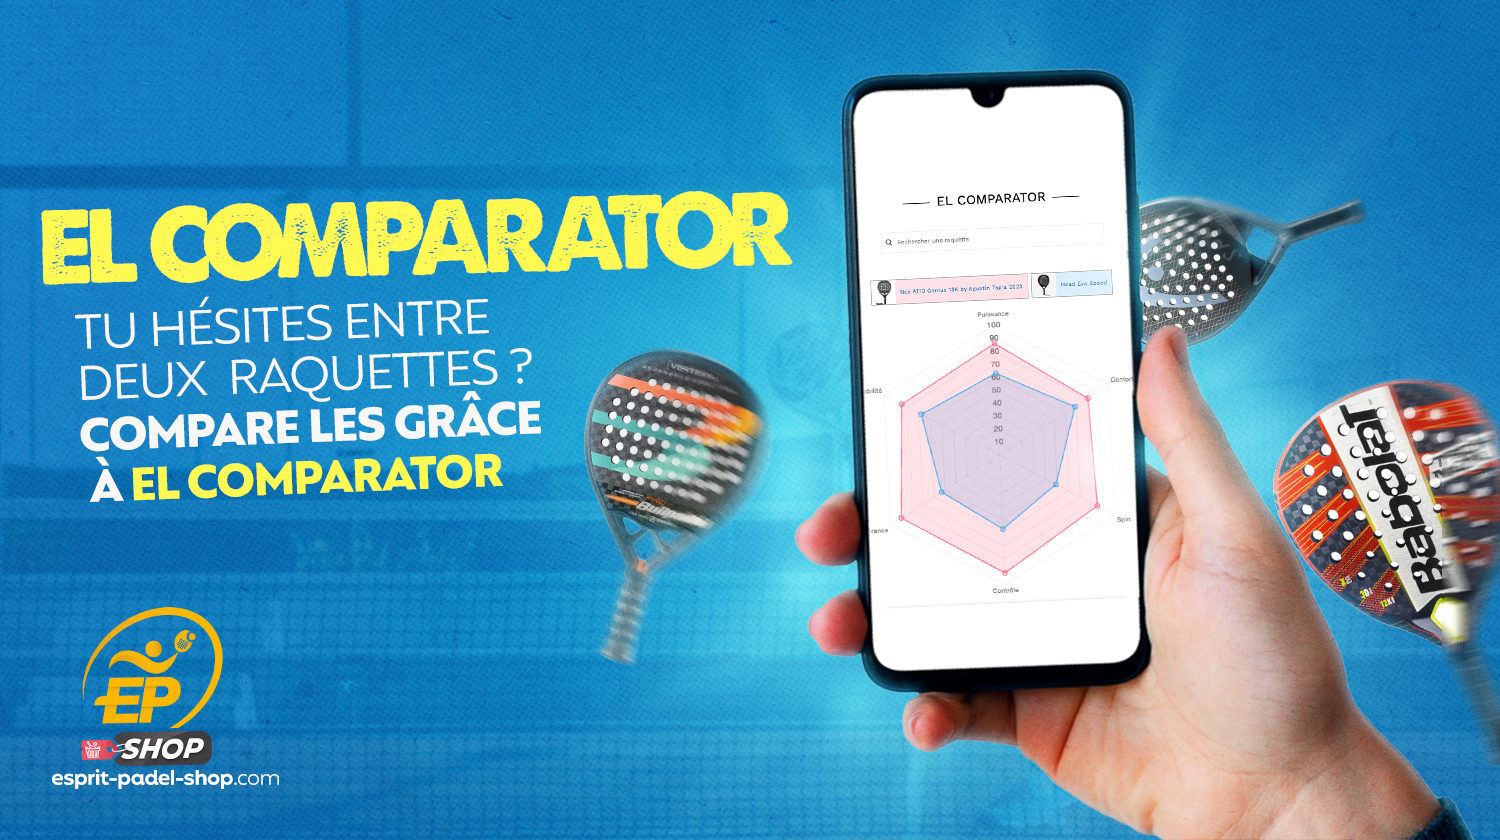 《El Comparator》登陆 Esprit Padel 商店